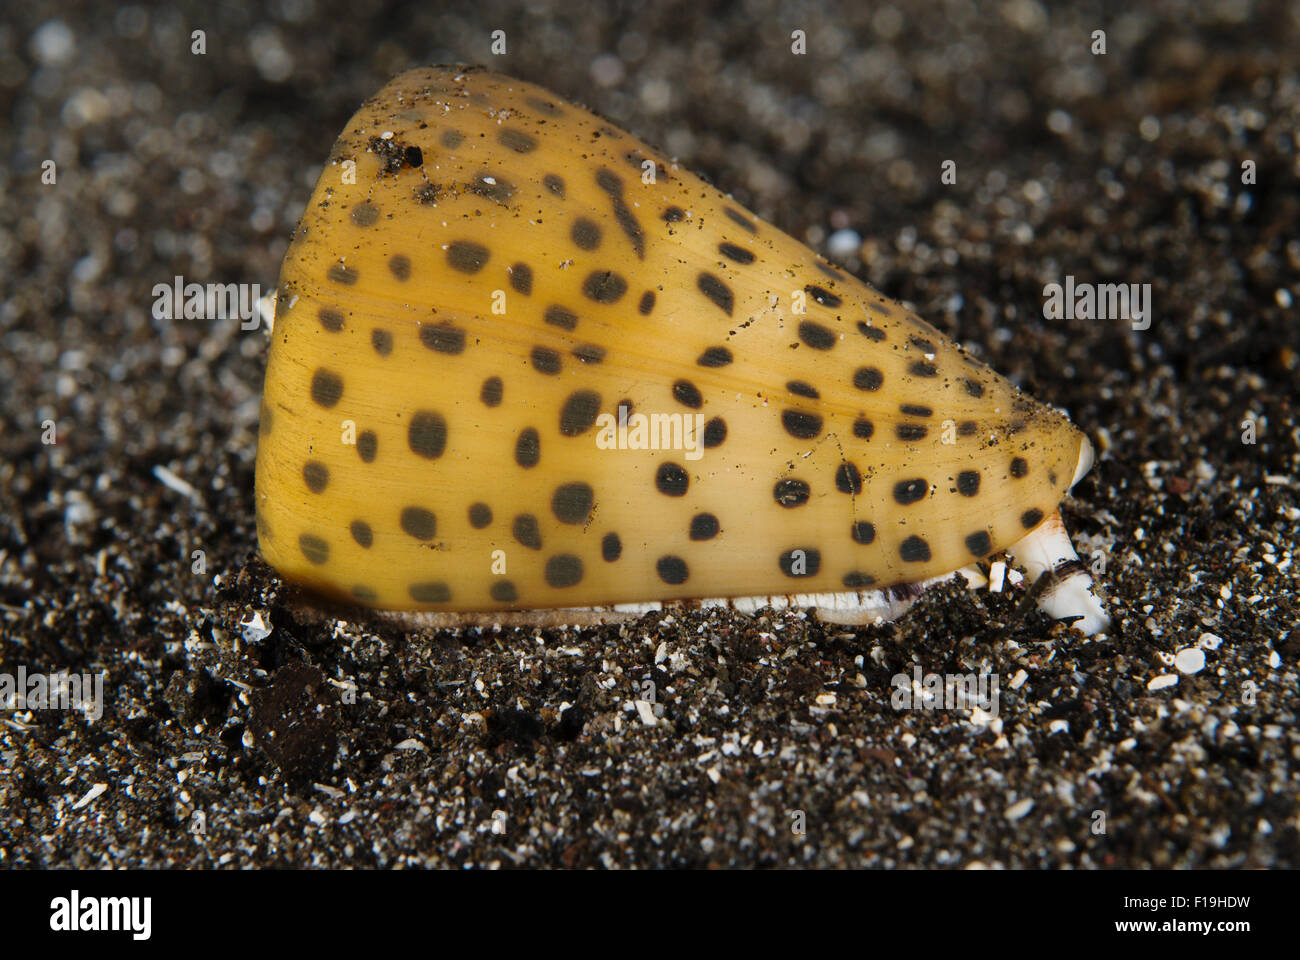 Px510239-D. Les lettres (conidae Conus litteratus), très venimeux. L'Indonésie, de l'océan Pacifique tropical. Photo Copyright © Brandon Banque D'Images